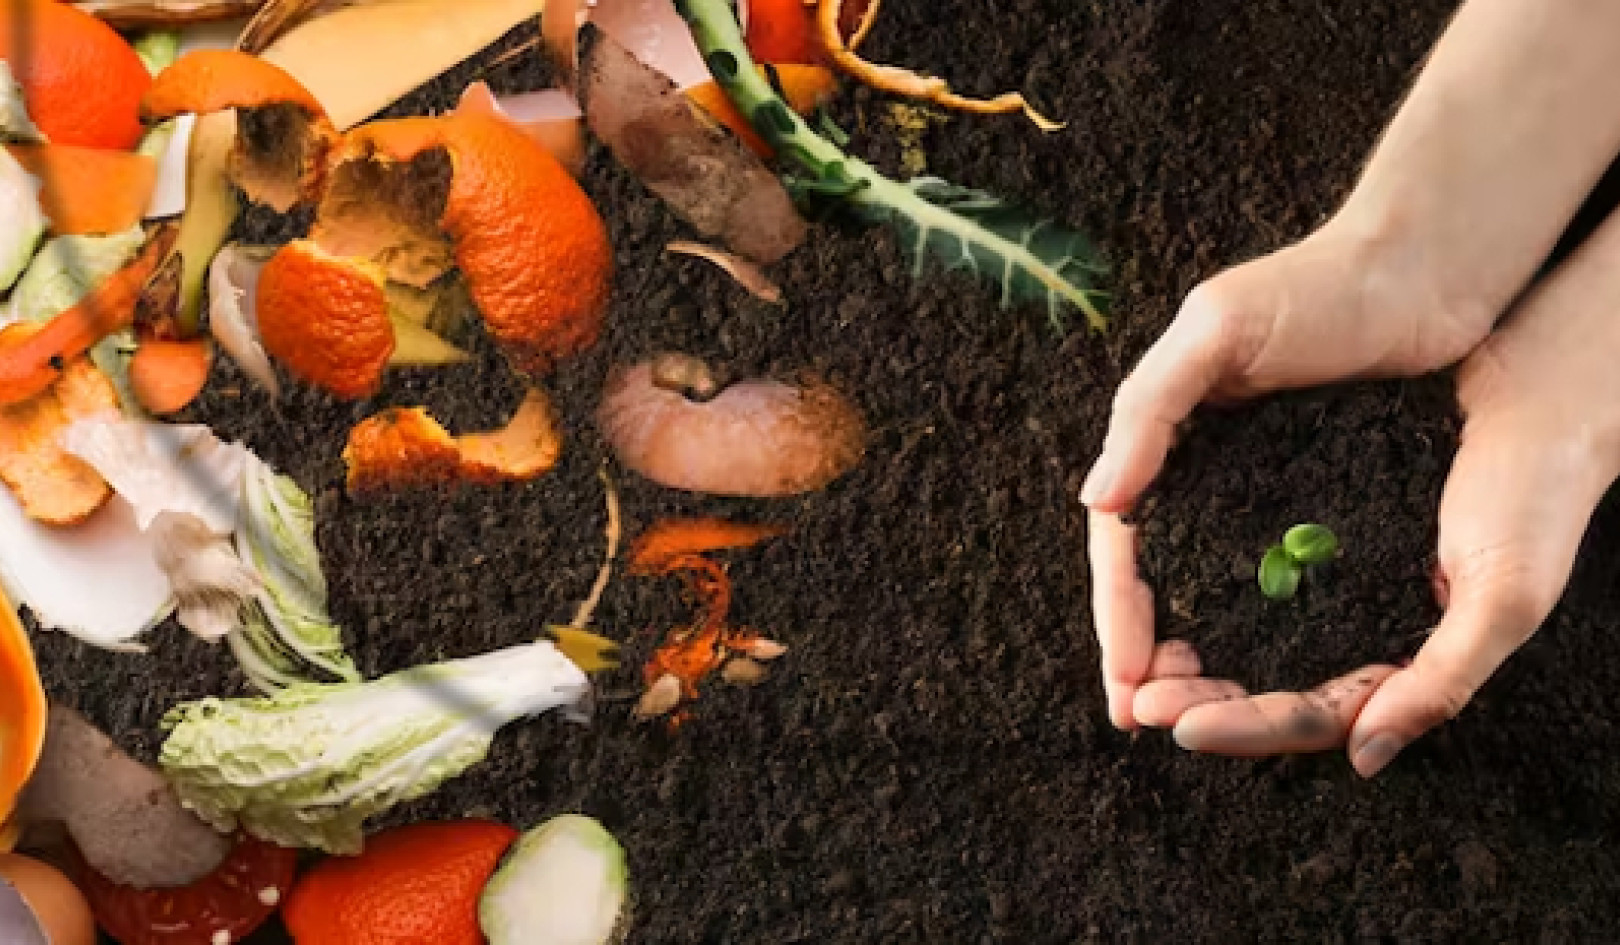 Od odpadów do bogactwa: dlaczego kompostowanie odpadów spożywczych jest lepsze niż składowanie odpadów